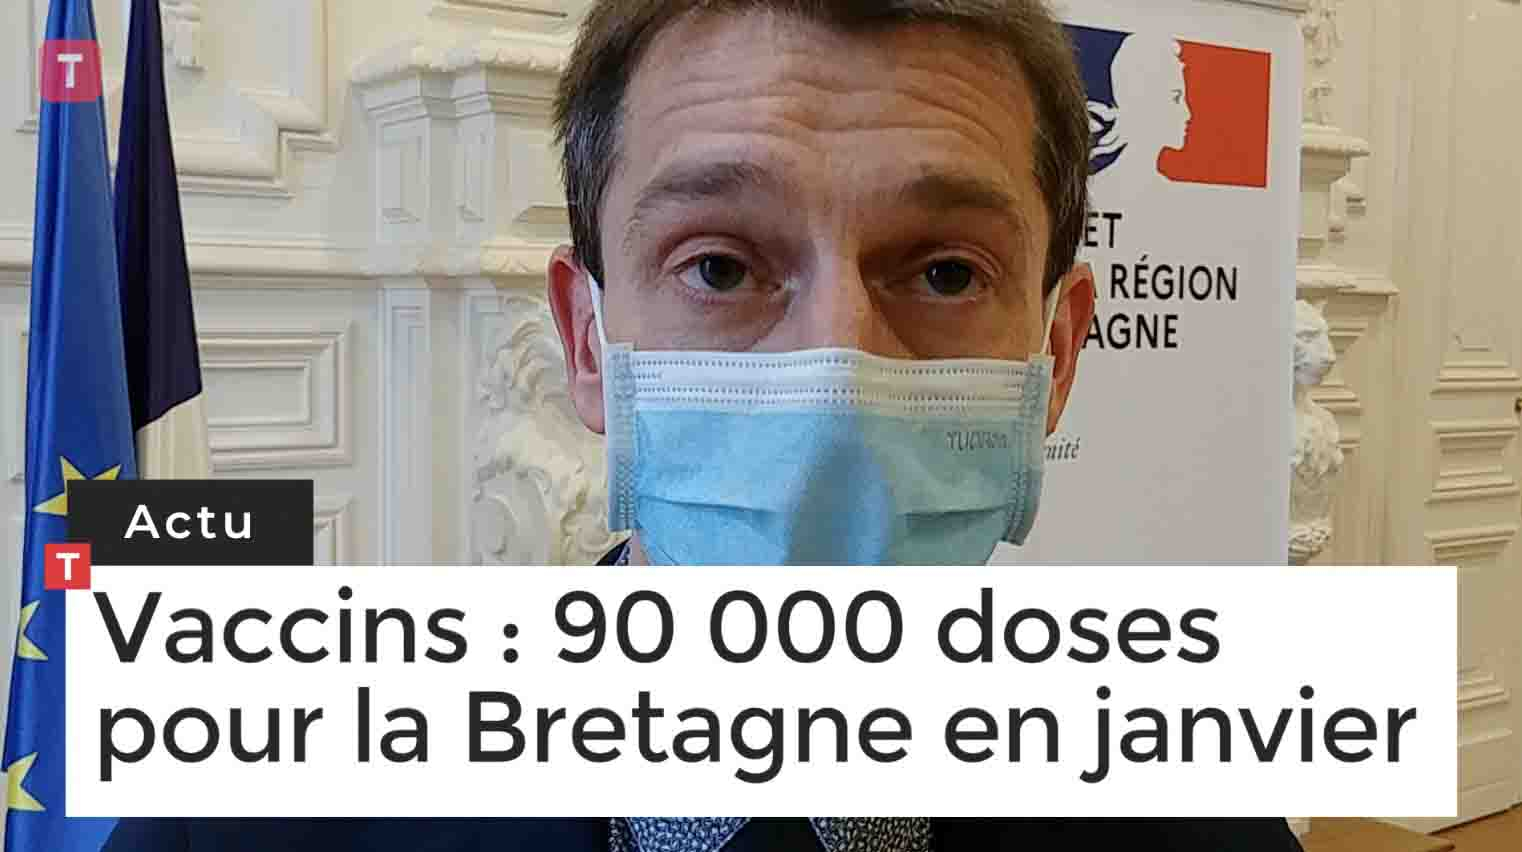 Vaccins. 90 000 doses pour la Bretagne en janvier (Le Télégramme)